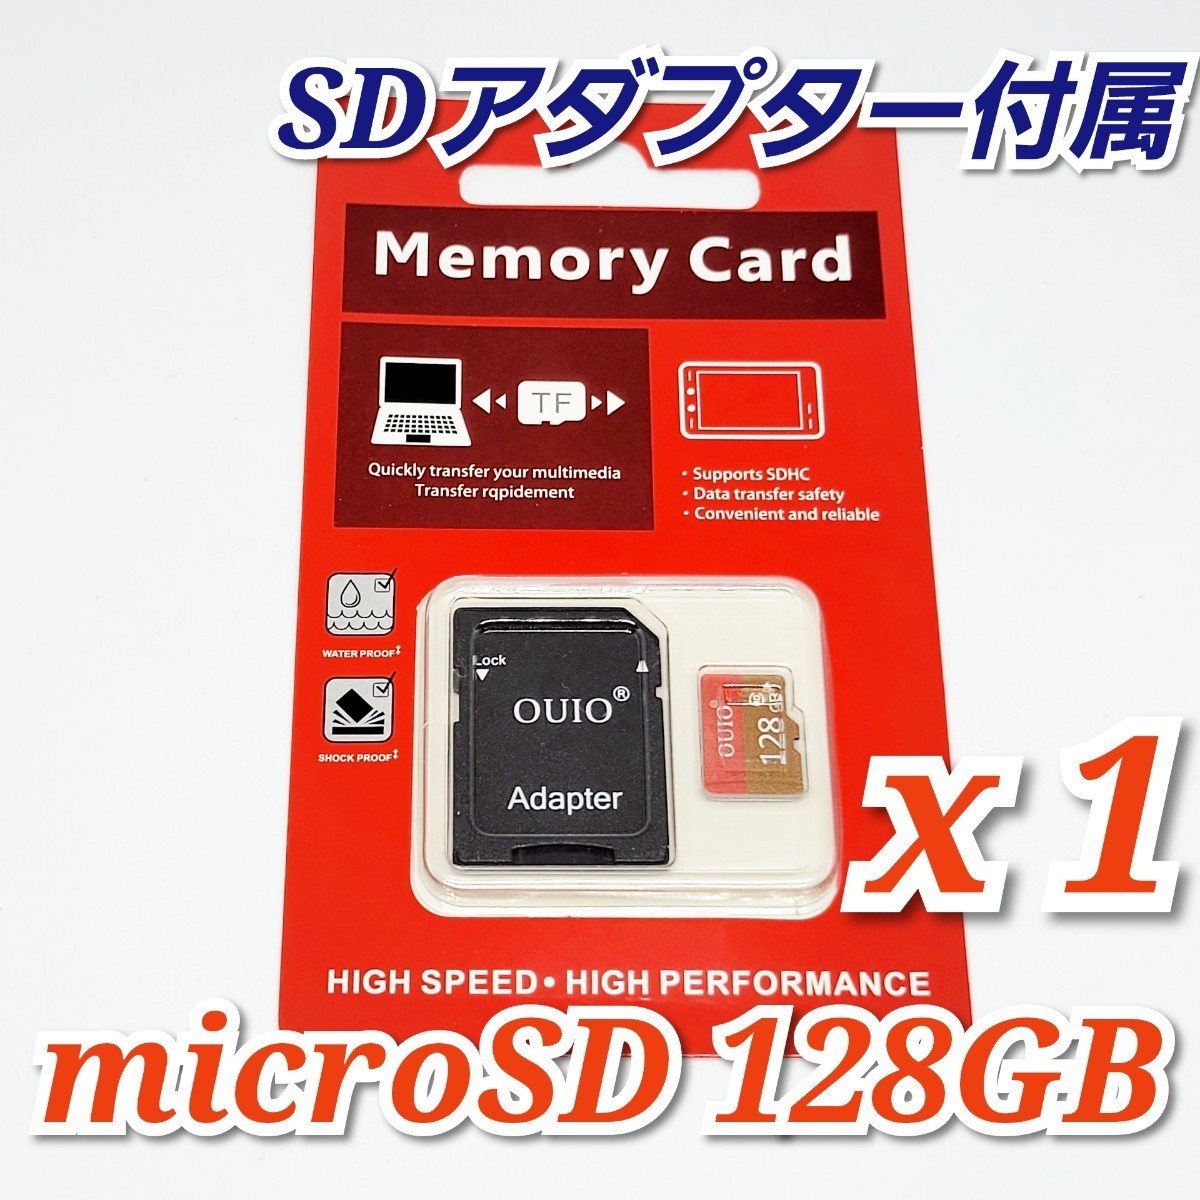 【送料無料】マイクロSDカード 128GB 1枚 class10 1個 microSD microSDXC マイクロSD OUIO 128GB RED-GOLD_画像1